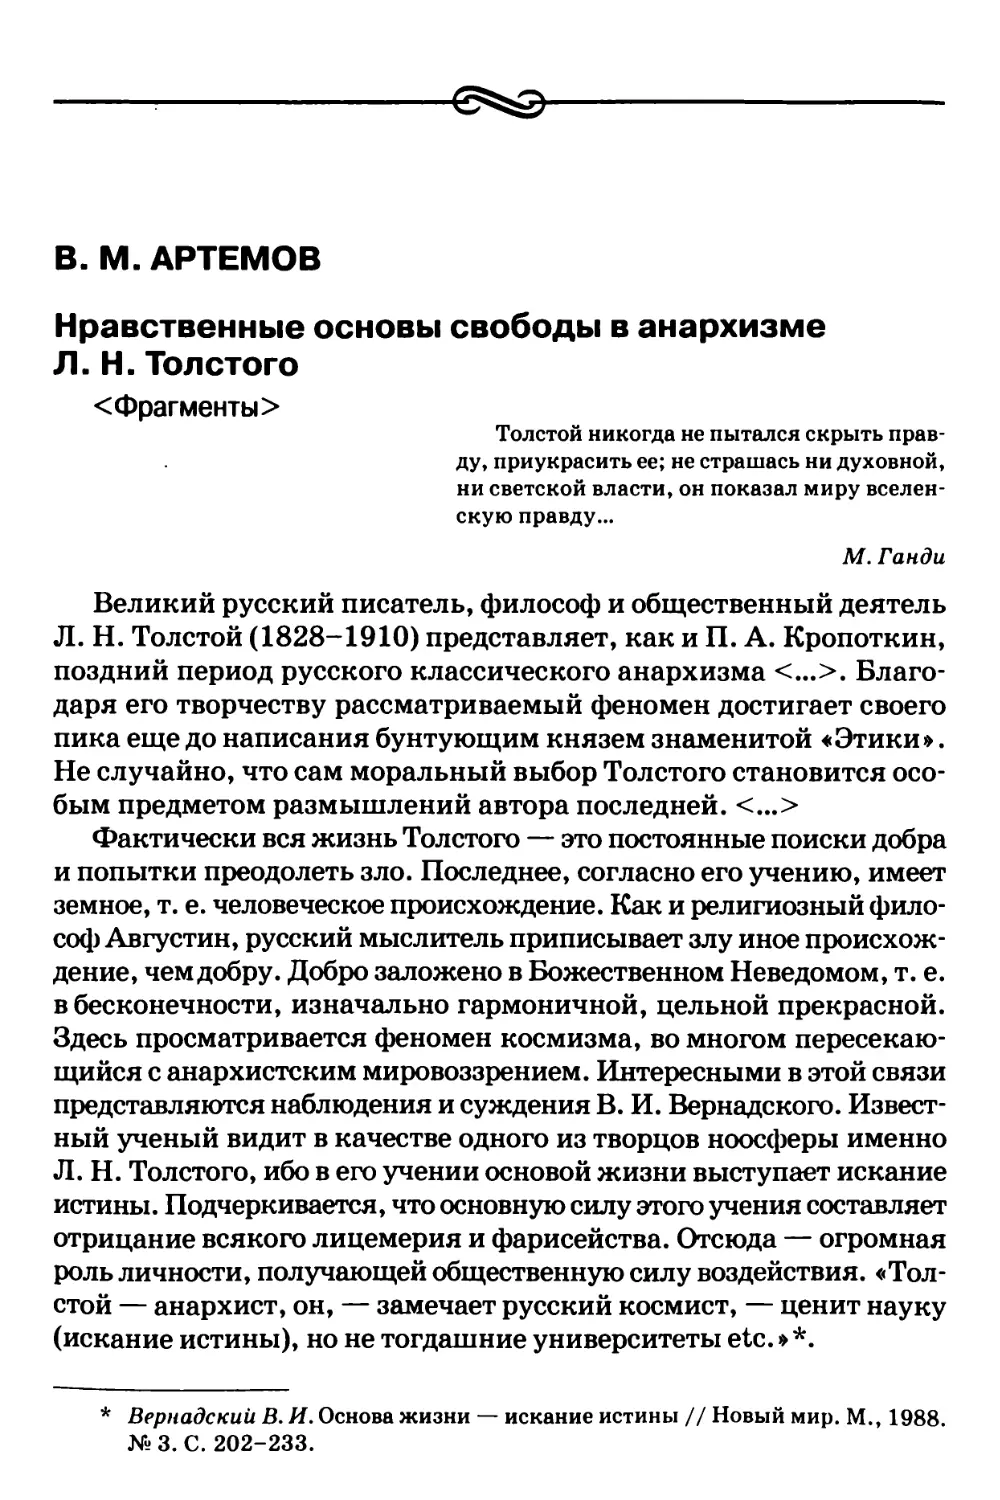 В.M. Артемов – Нравственные основы свободы в анархизме Л.Н. Толстого <Фрагменты>